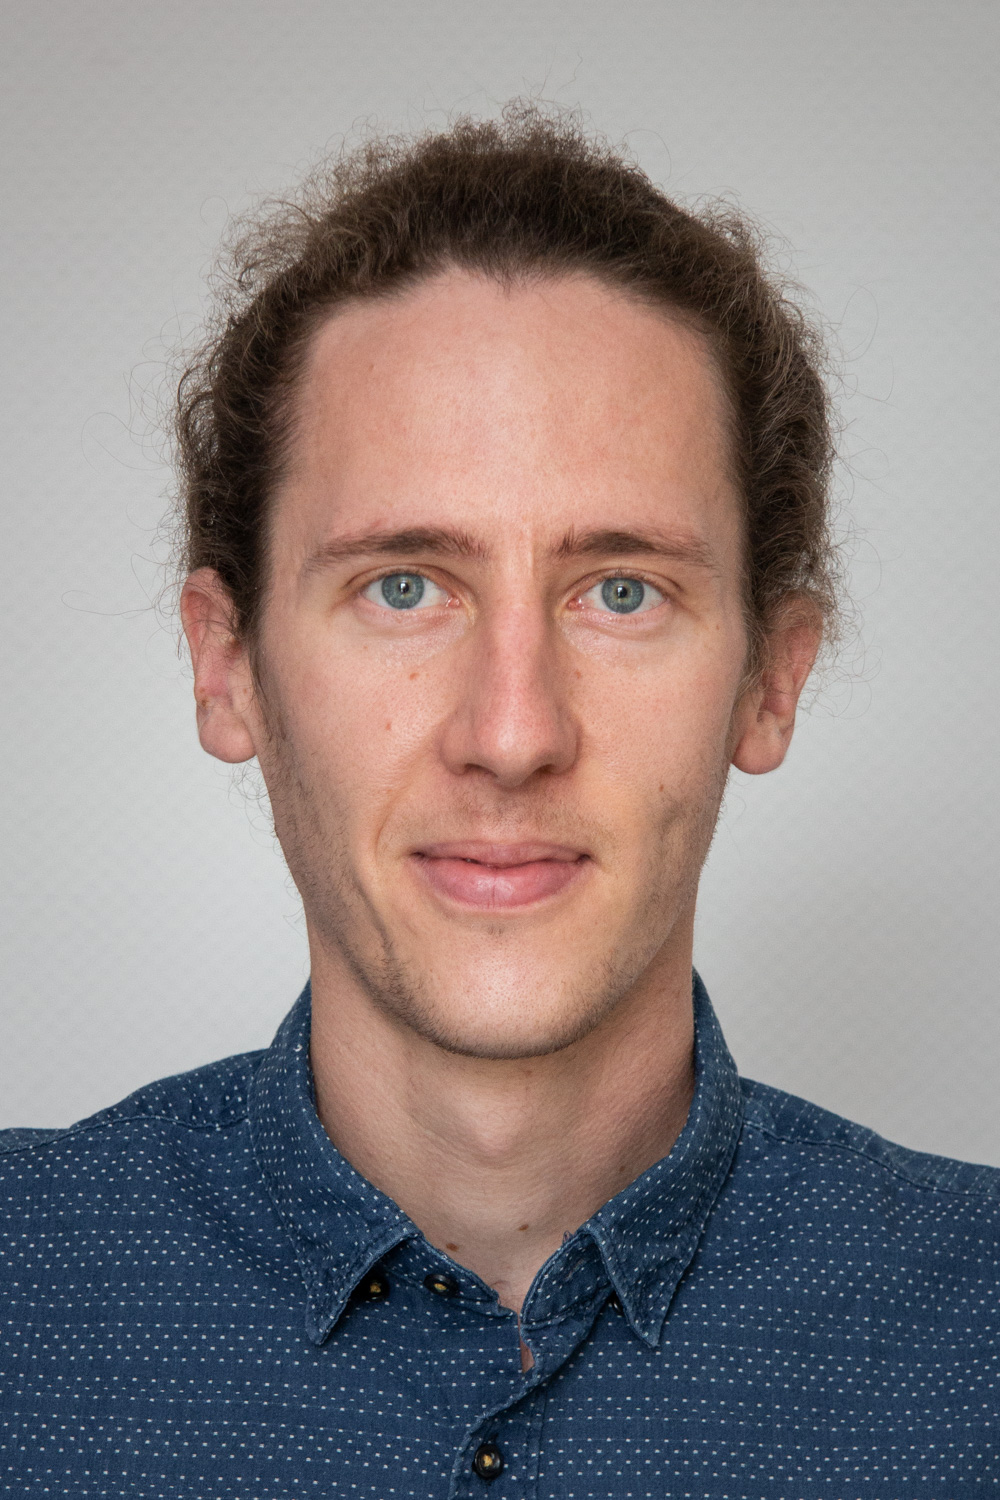 Martin Rohrmüller, M. Sc. – Research Associate